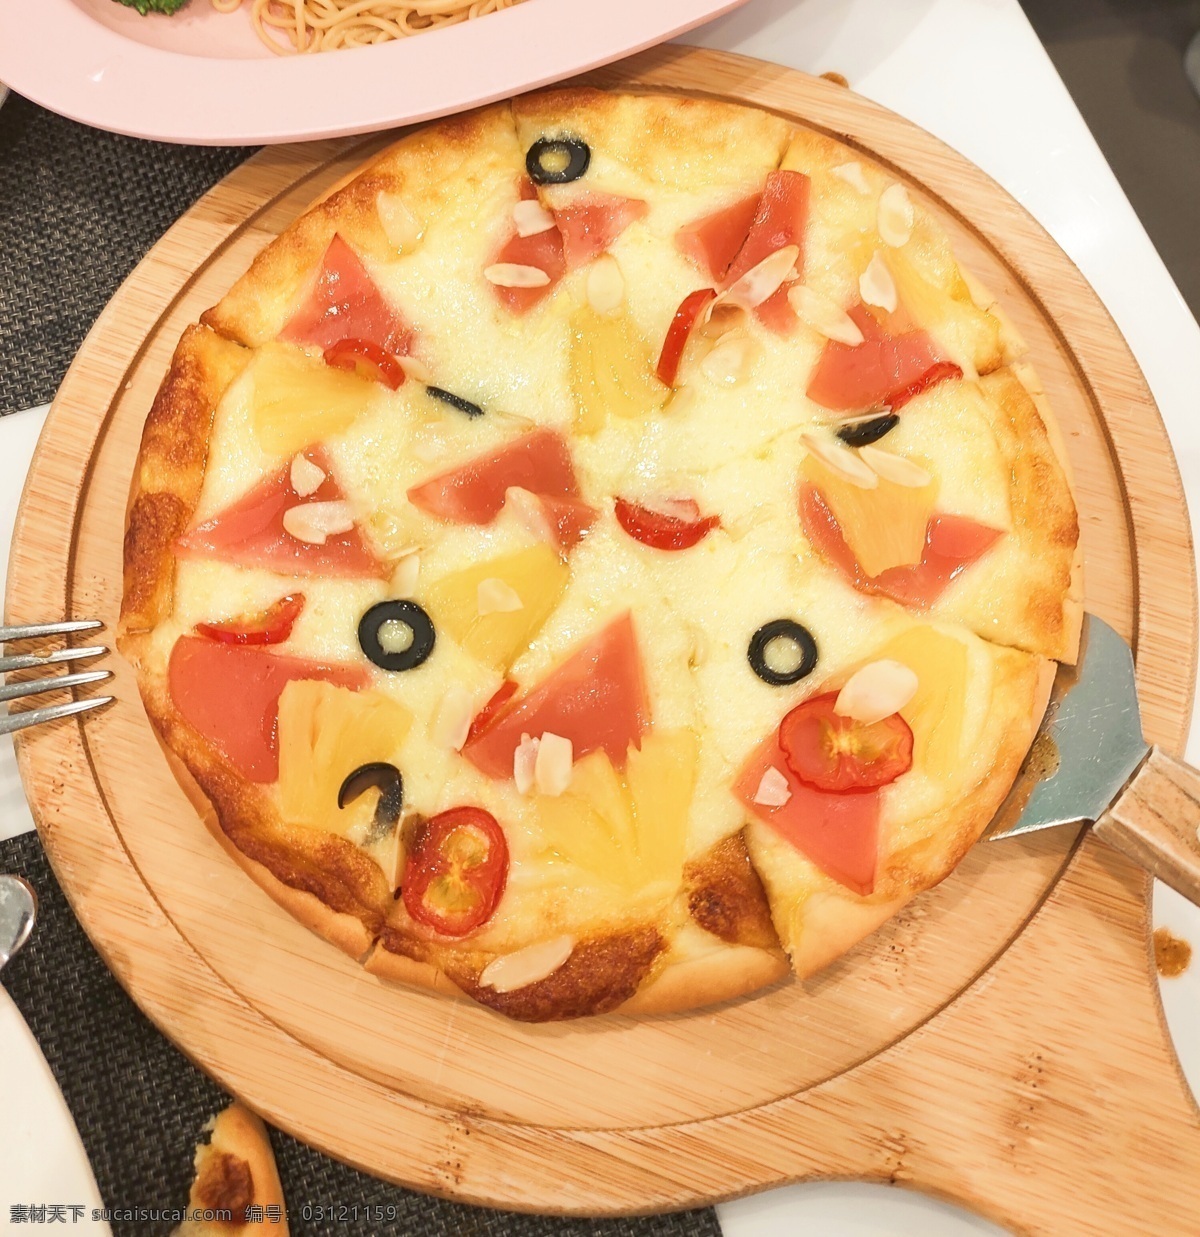 水果披萨图片 水果披萨 披萨 美味水果披萨 新鲜披萨 多水果披萨 美食 餐饮美食 西餐美食